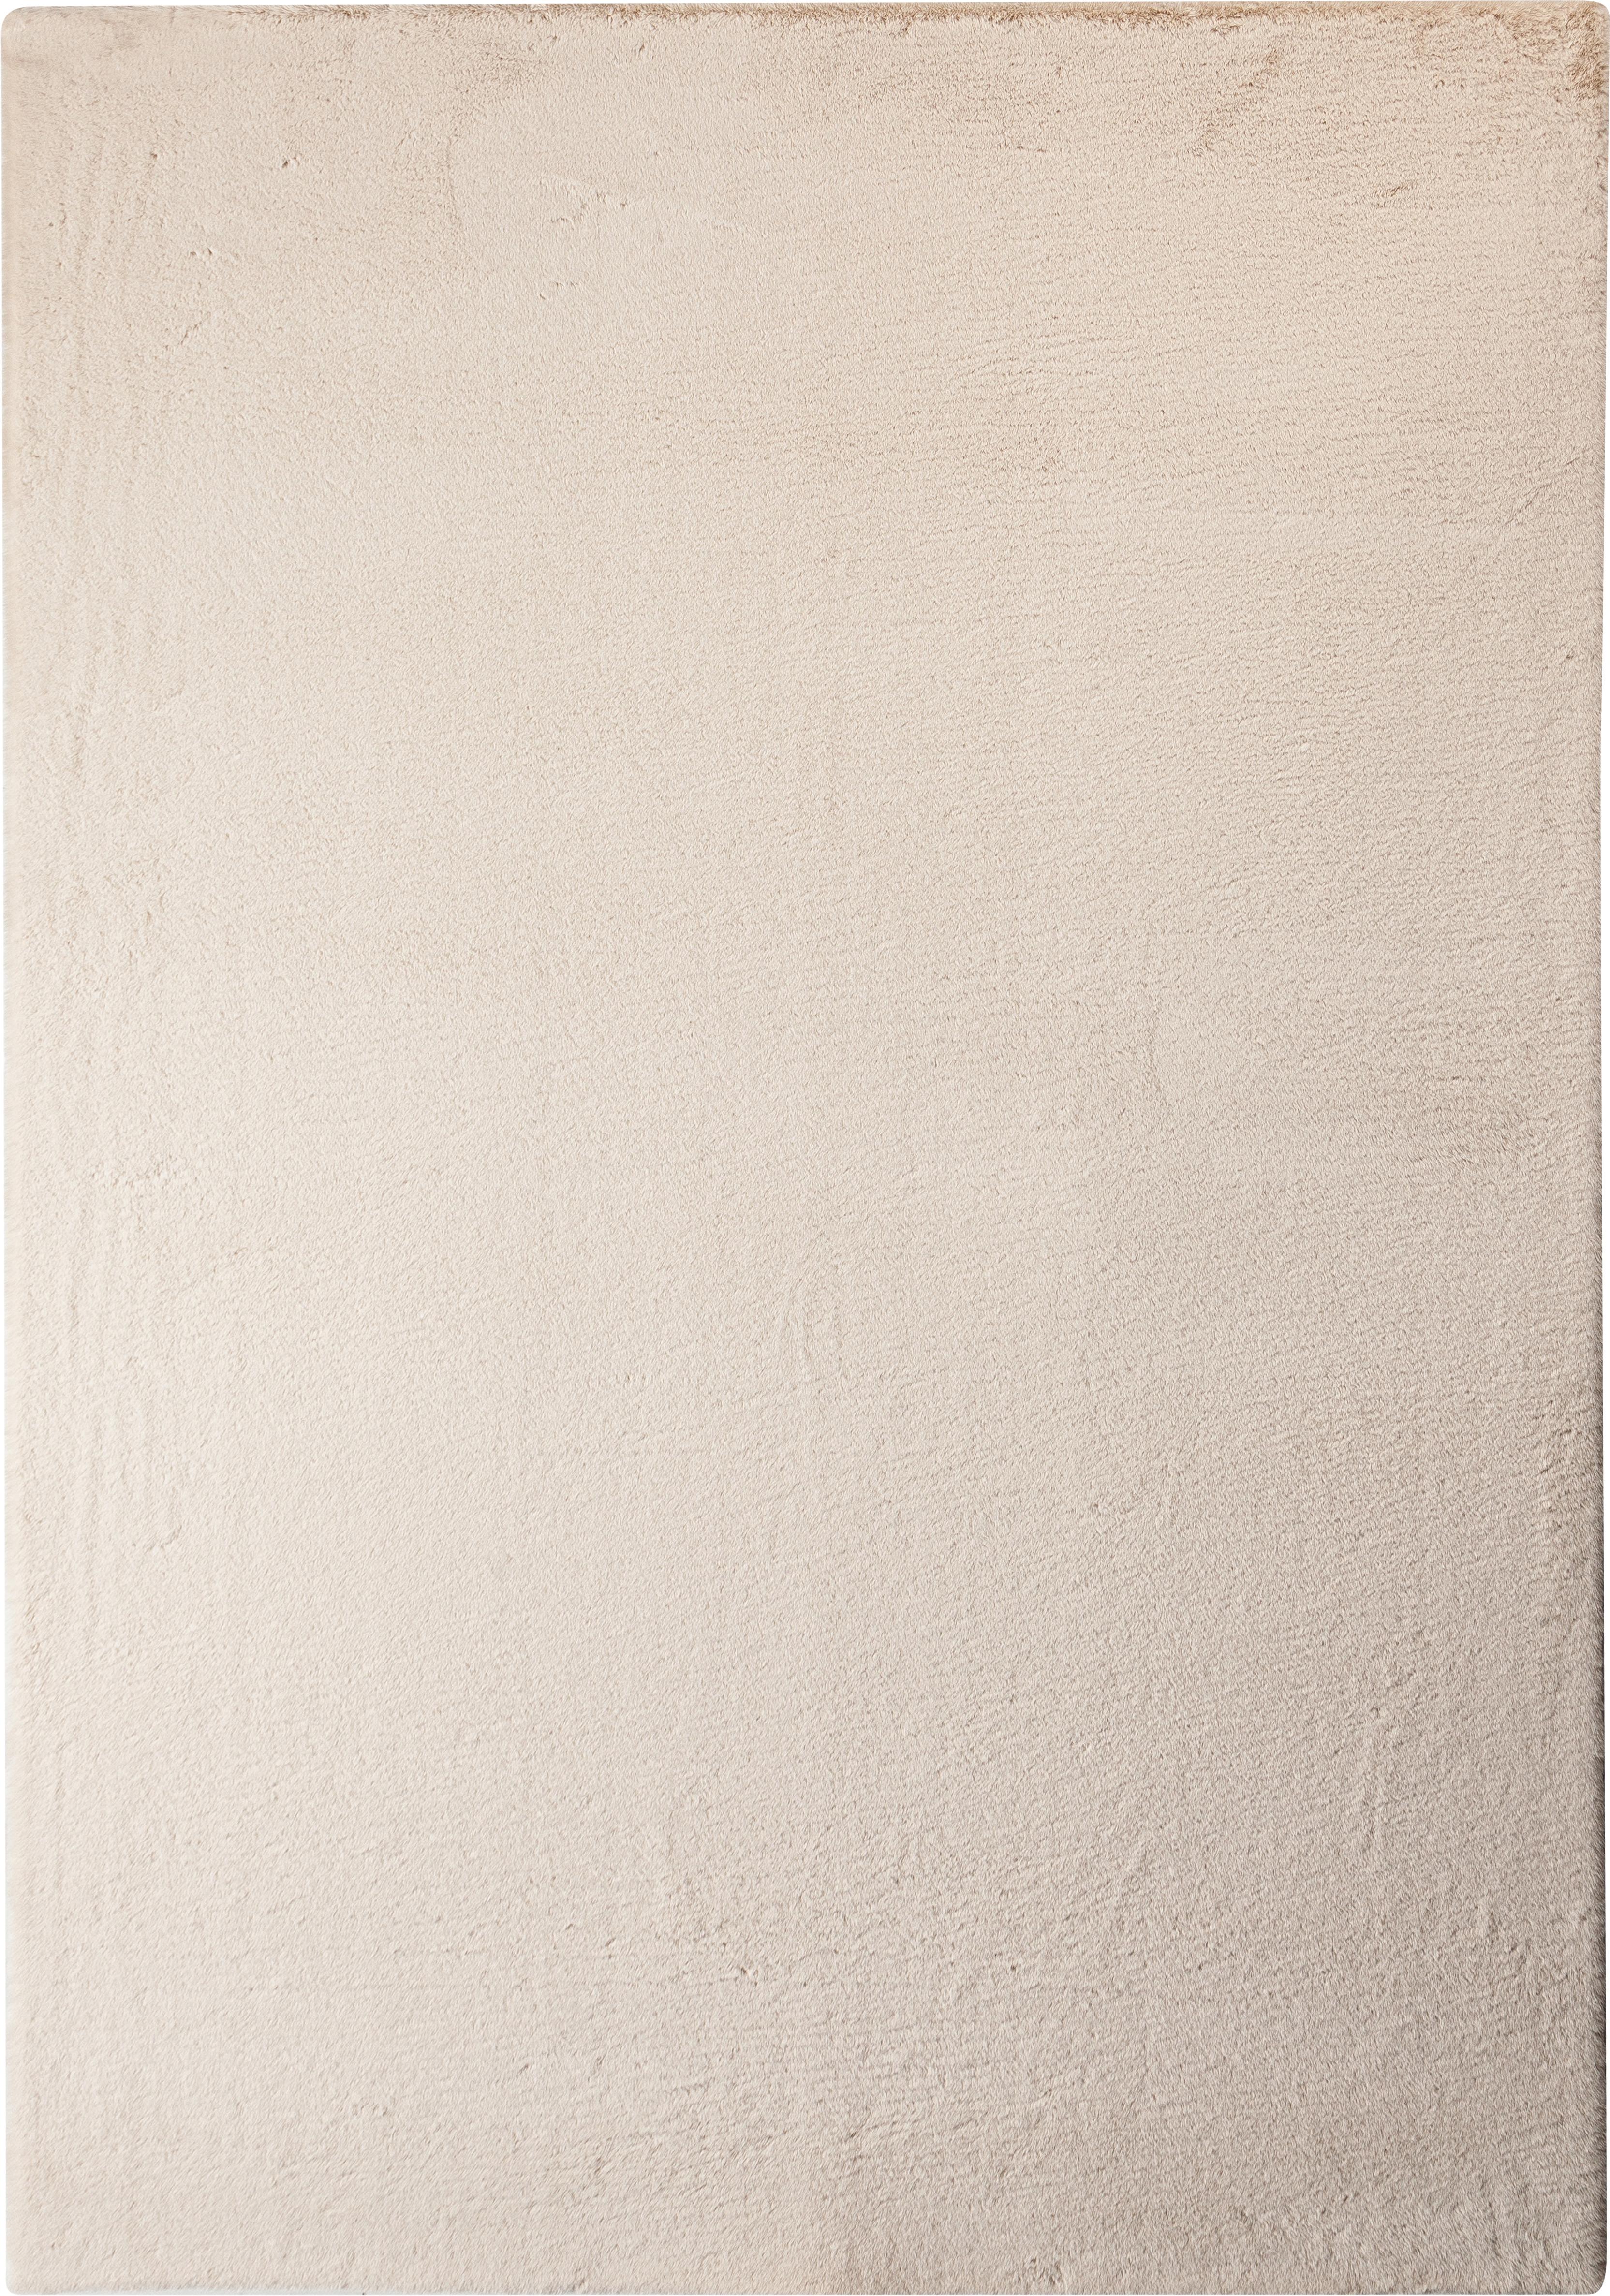 Fellteppich Margarete Beige 160x220 cm - Beige, MODERN, Textil (160/220cm) - Luca Bessoni